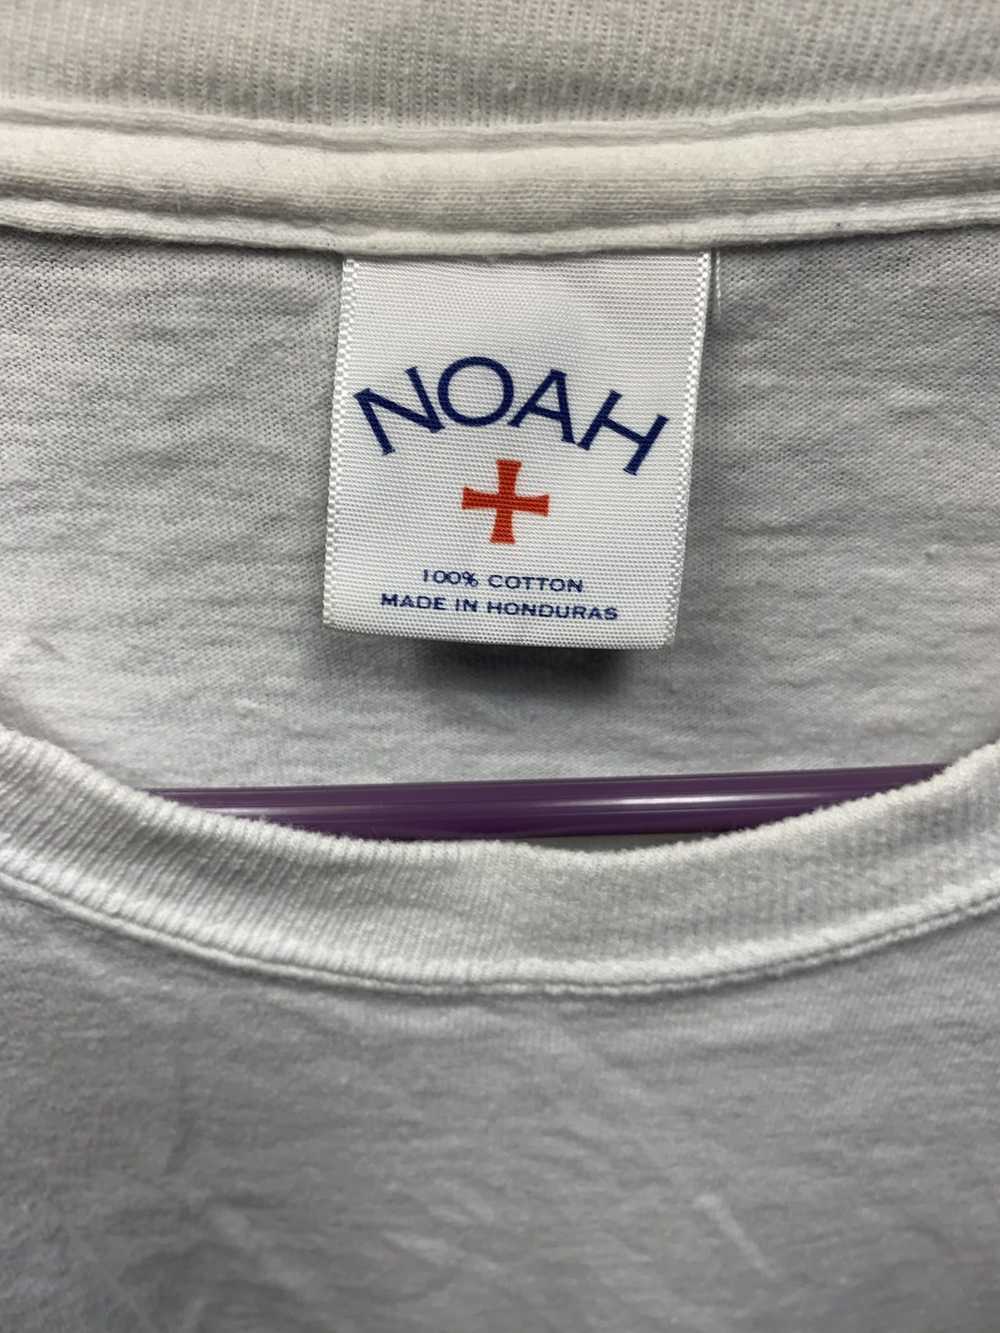 Noah Noah long sleeve Tee - image 4